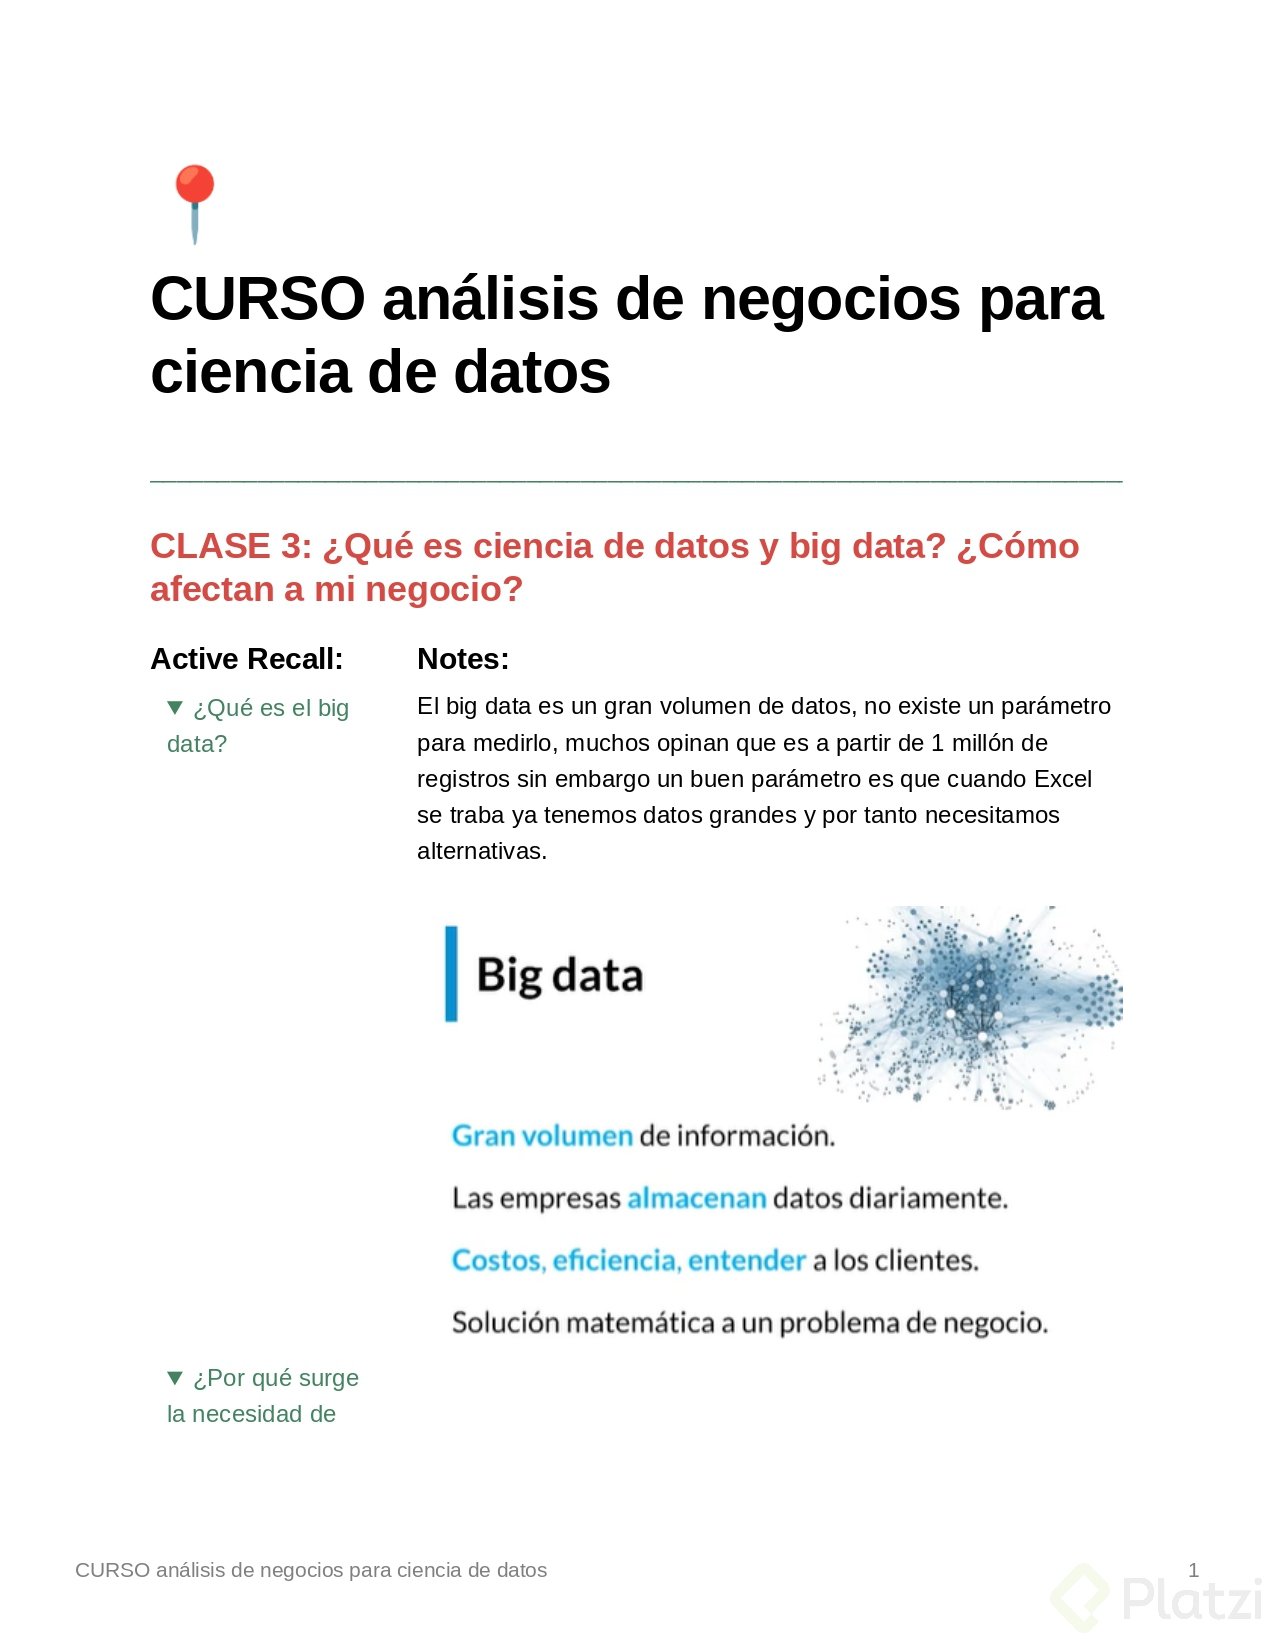 CURSO_anlisis_de_negocios_para_ciencia_de_datos_page-0001.jpg